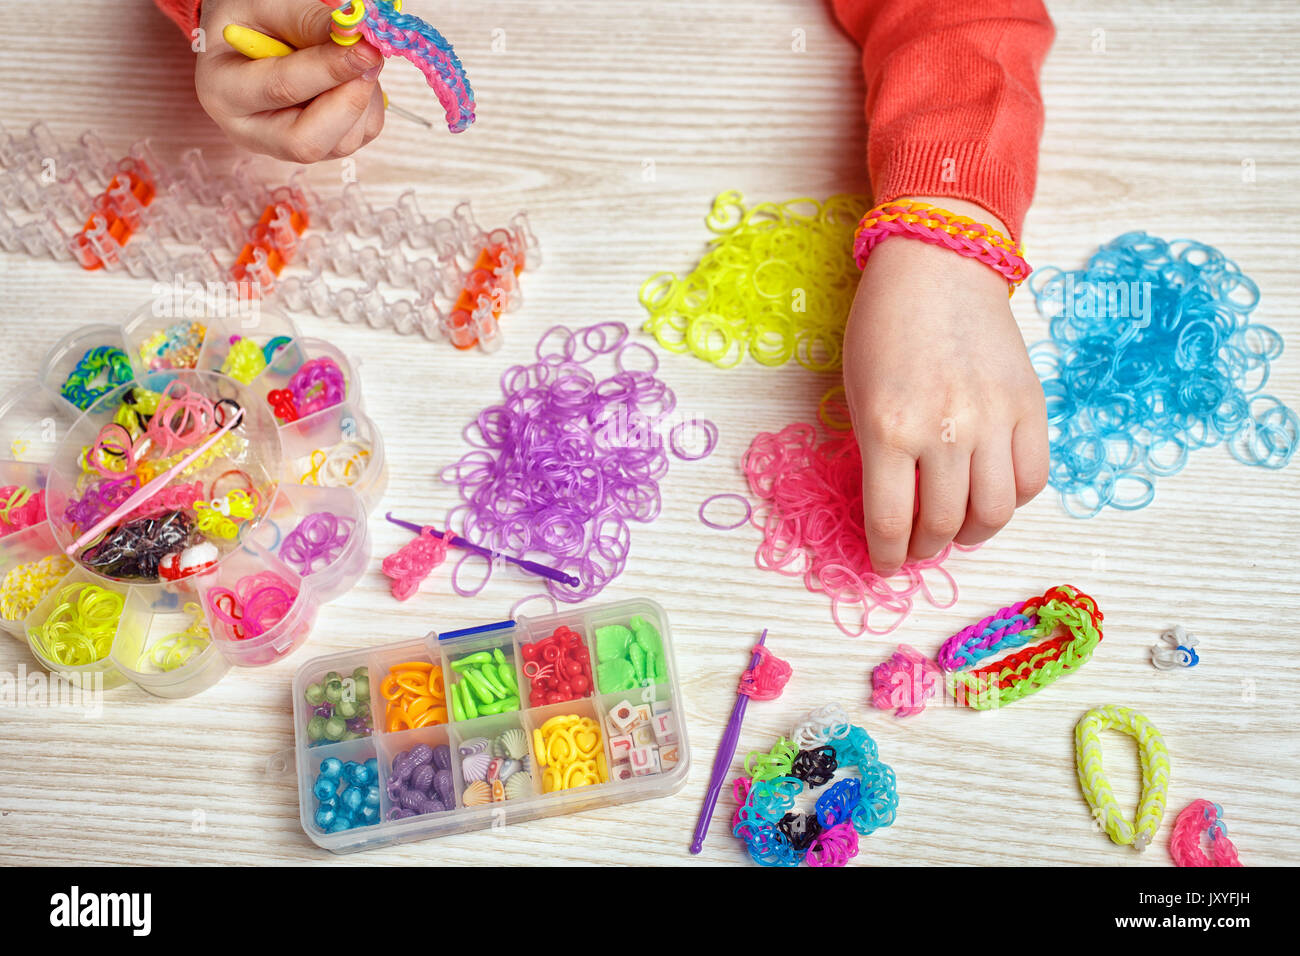 Gummi, Handwerk und Fashion Concept - farbige Gummibänder und Geräte für das Weben von rubber band Bracelet auf Holz- Hintergrund Stockfoto